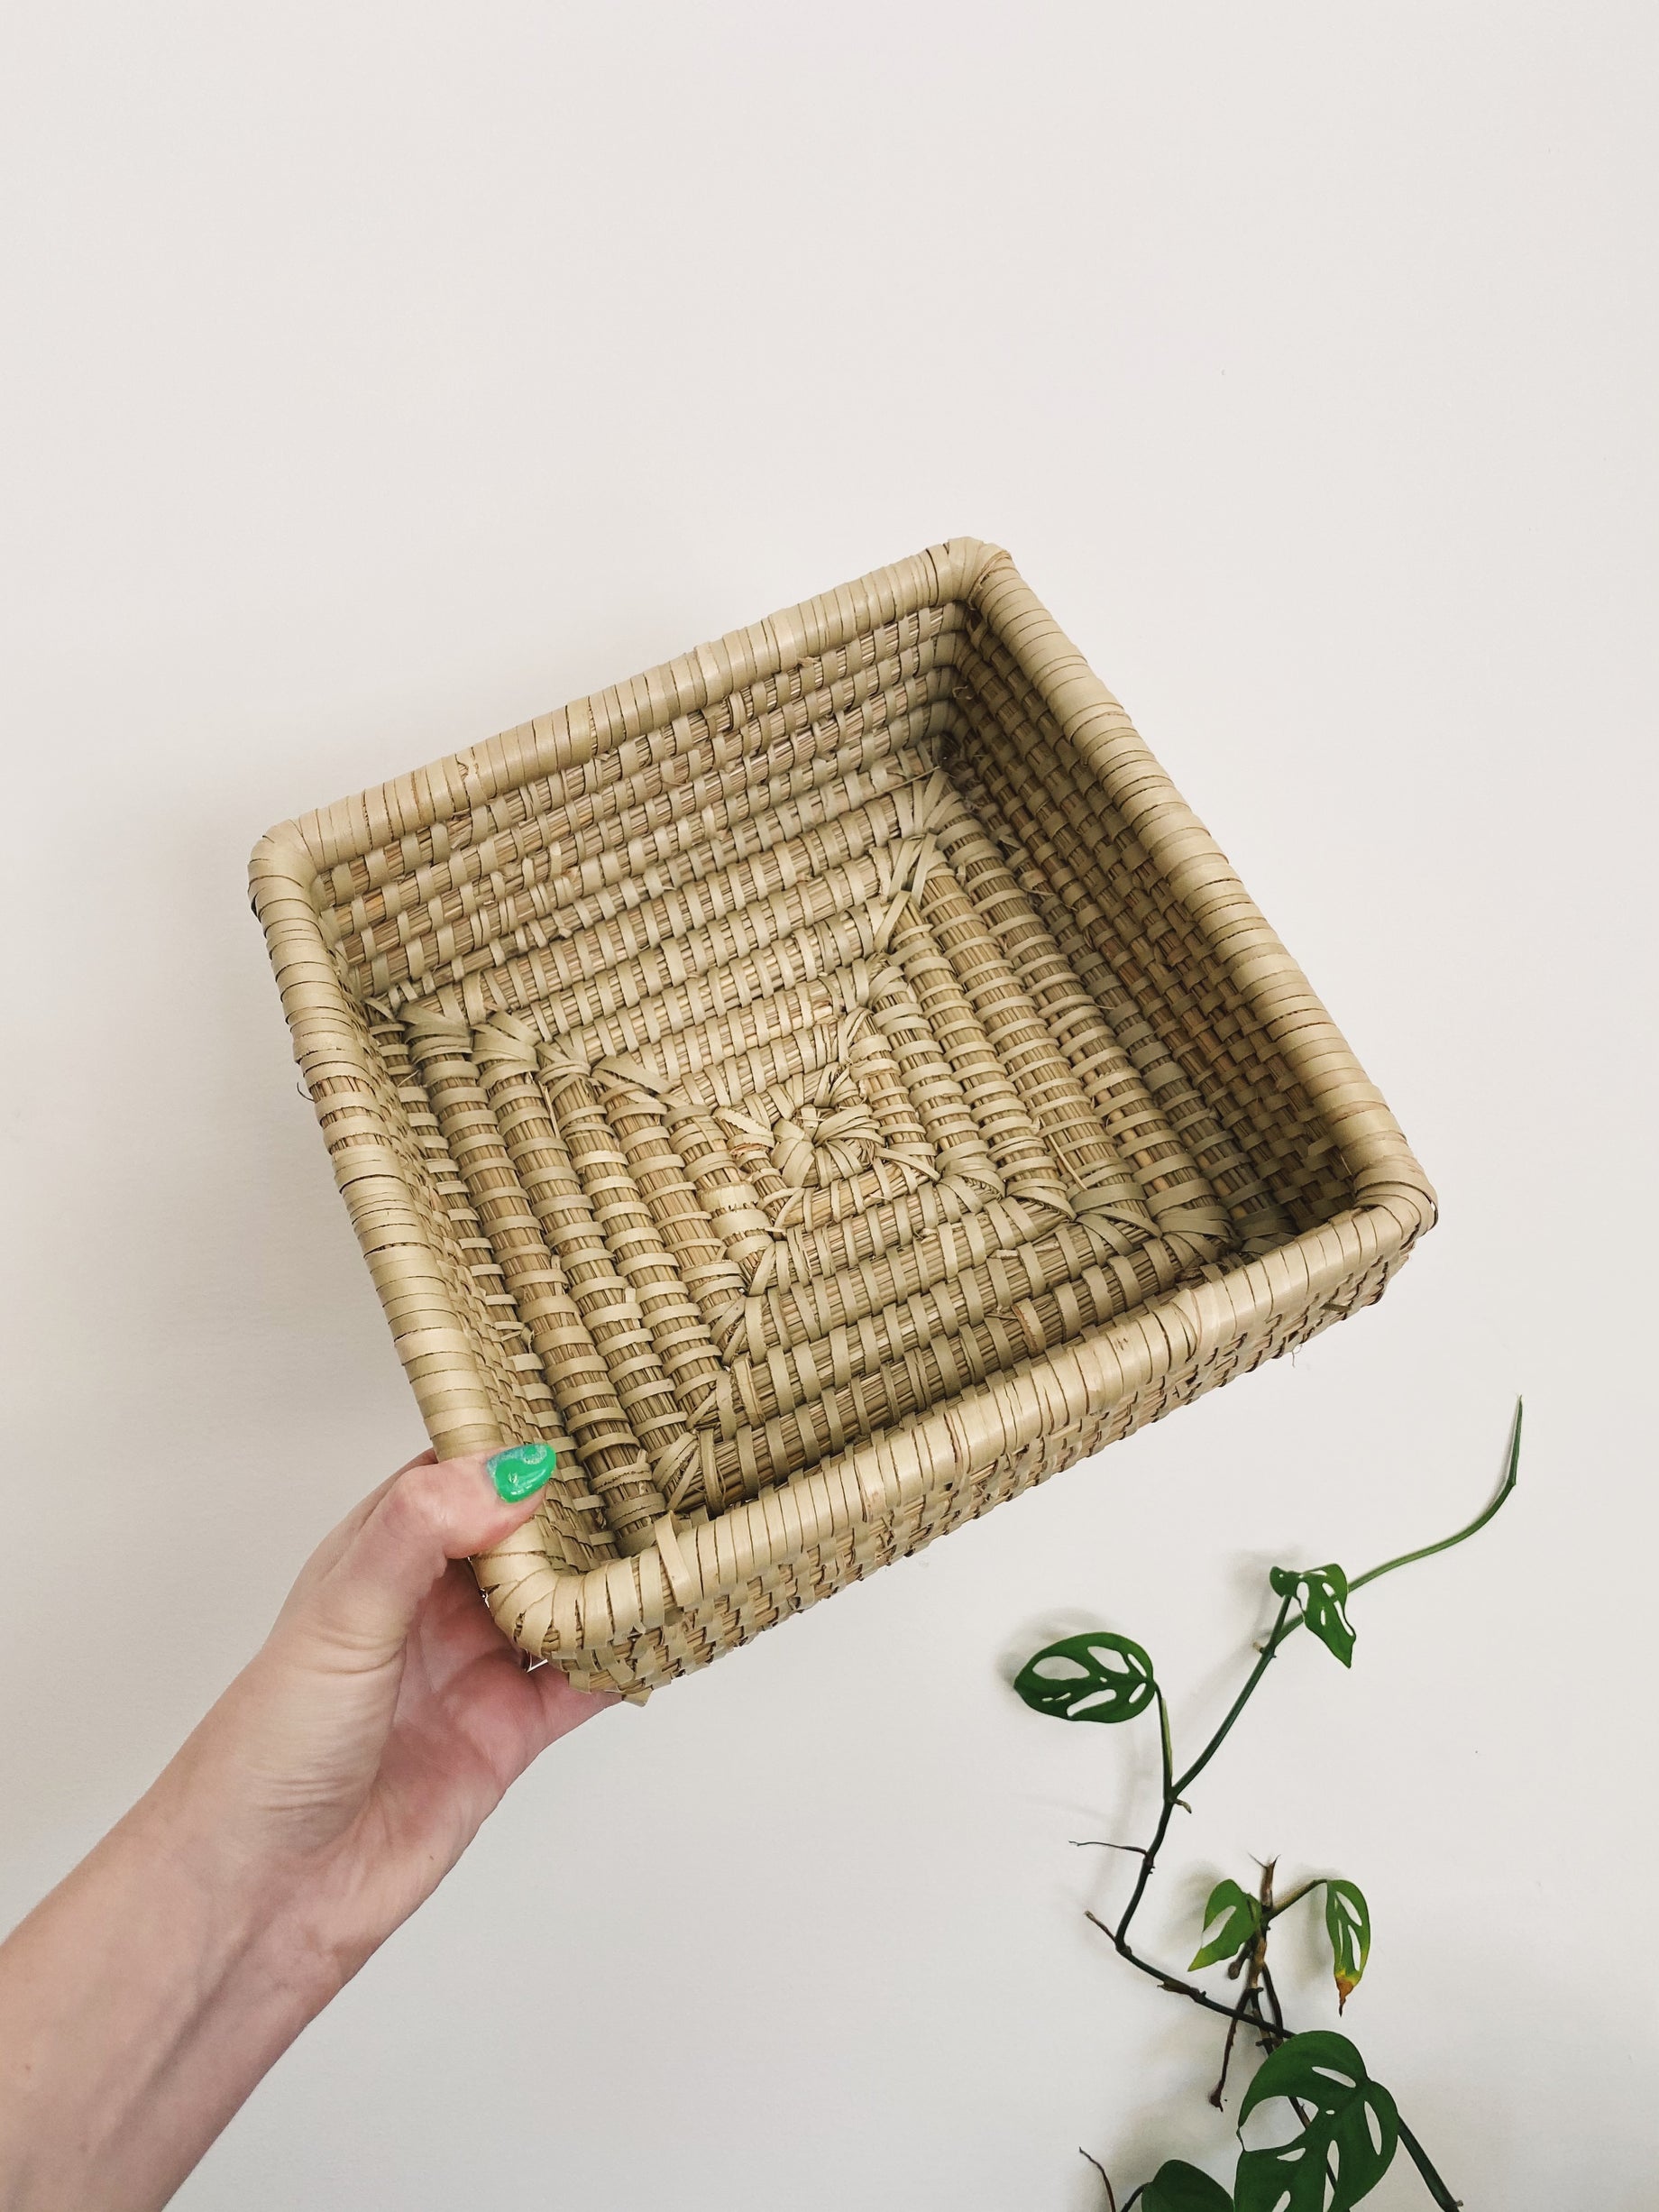 Square Seagrass Basket